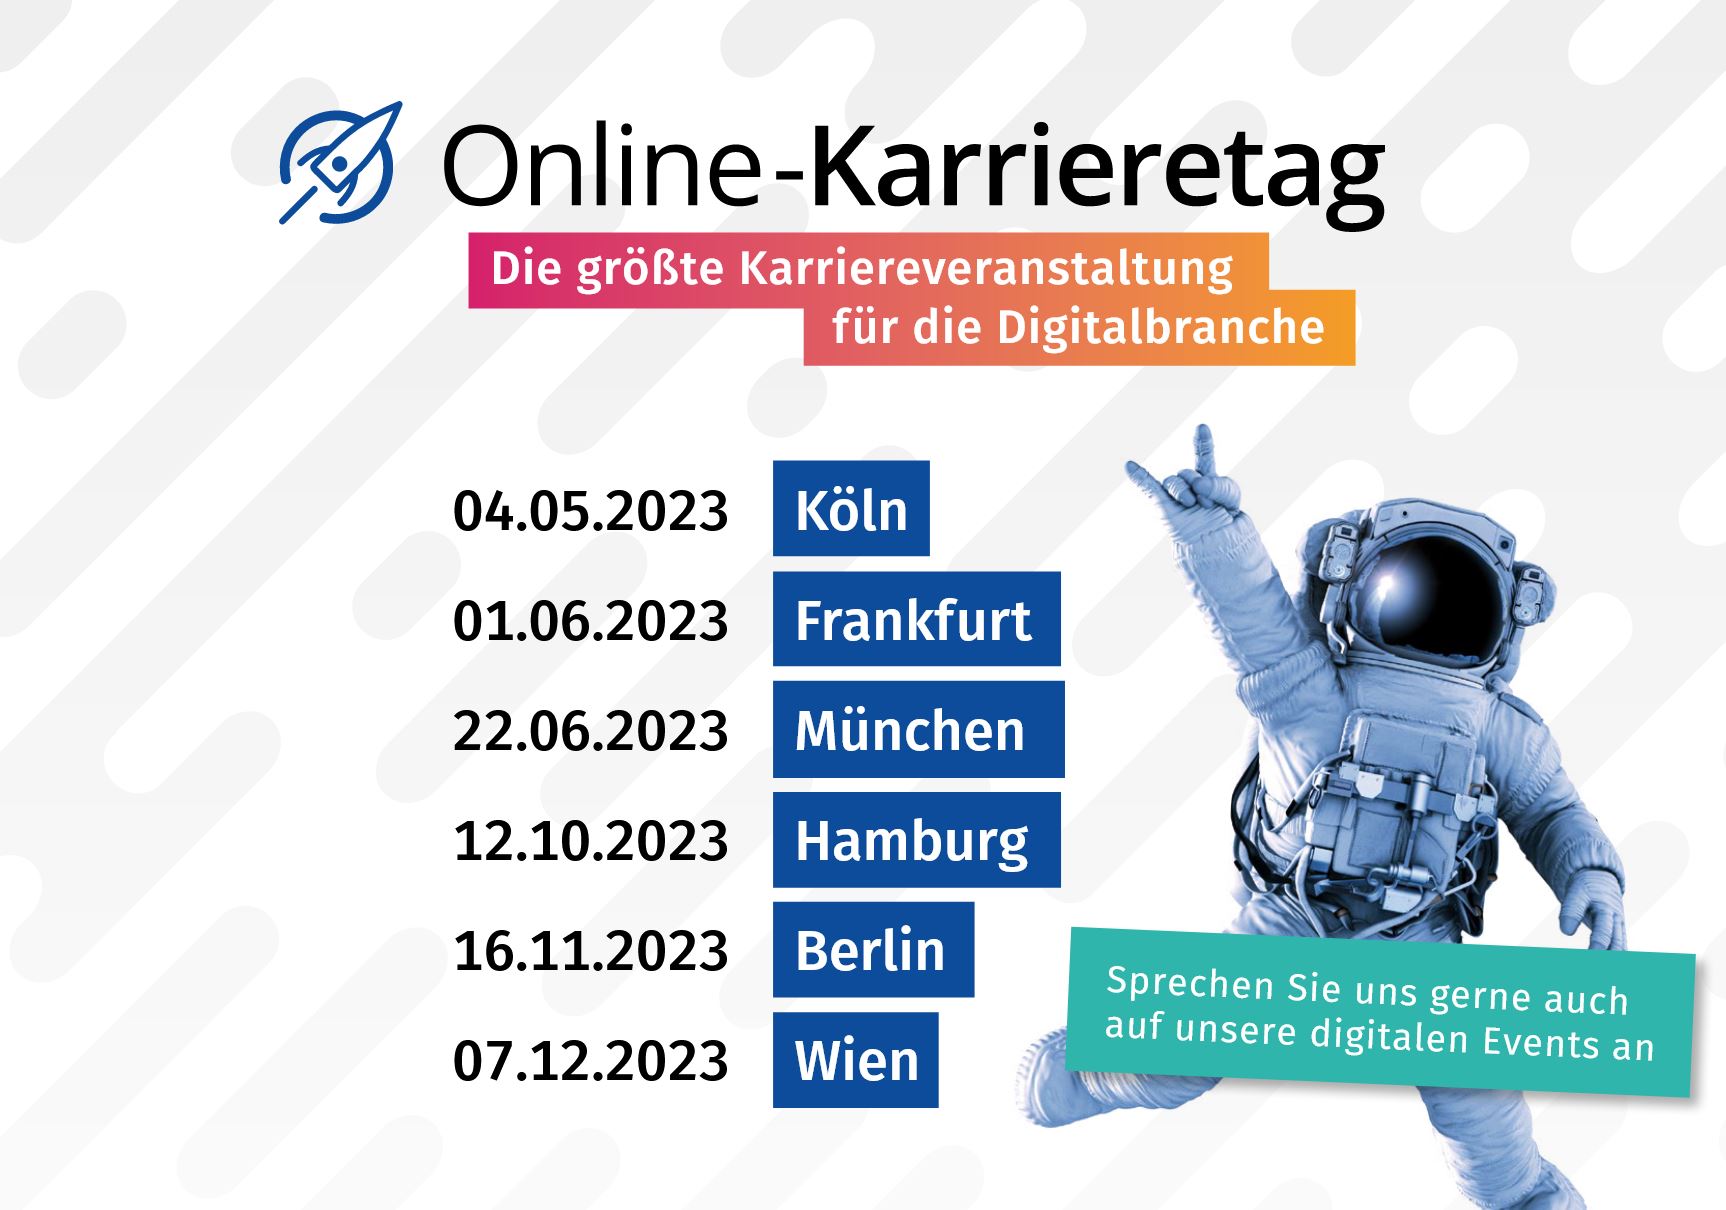 Online-Karrieretag in Köln - Die größte Karriereveranstaltung für die Digitalbranche